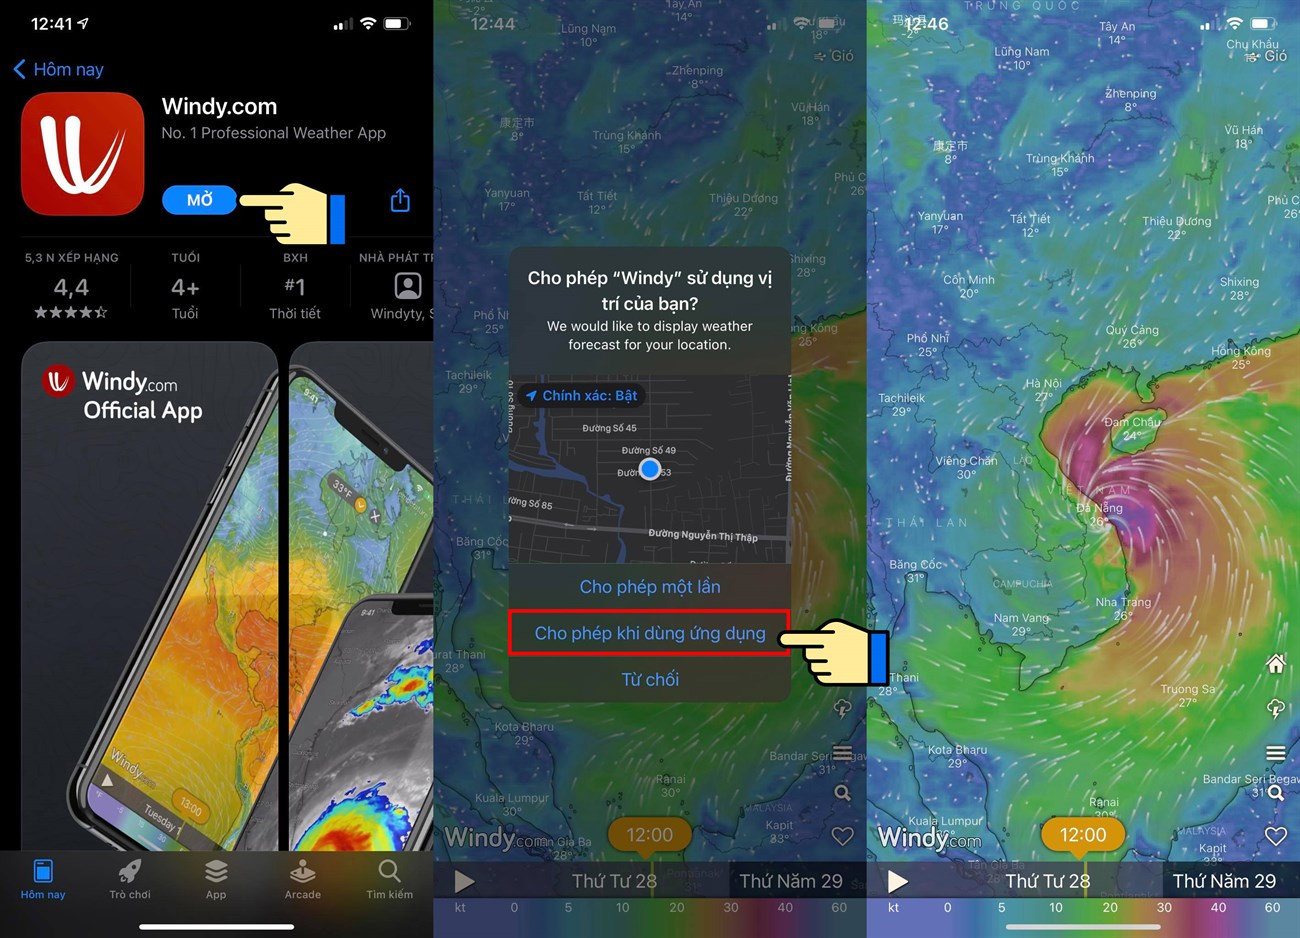 Cách xem bản đồ dự báo thời tiết, bão lũ, thiên tai Việt Nam trực tiếp qua vệ tinh > Cài đặt ứng dụng Windy